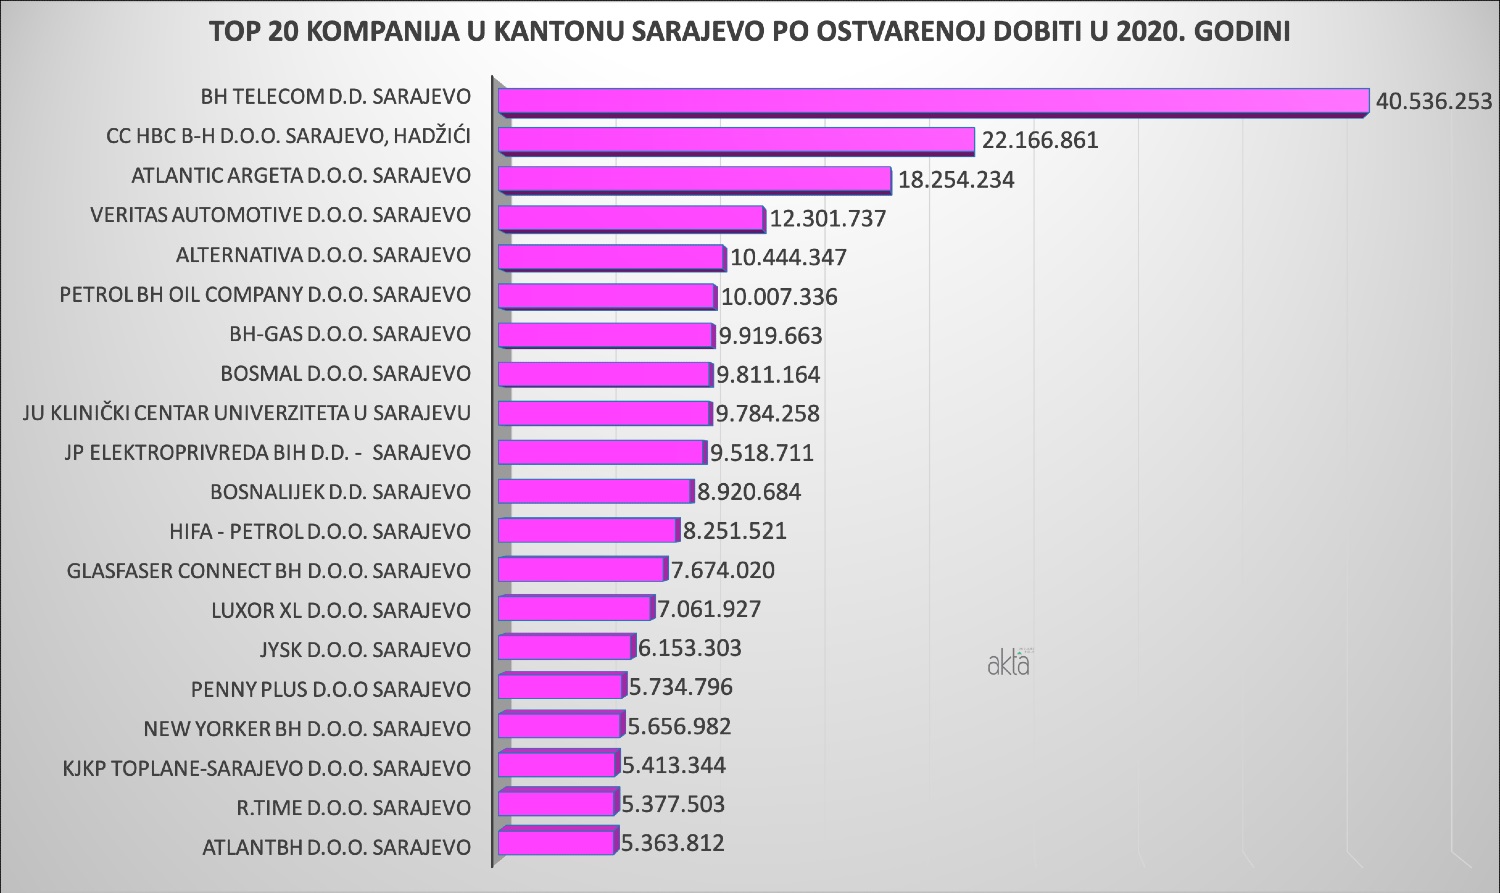 TOP 20 kompanija u Kantonu Sarajevo u 2020. godini